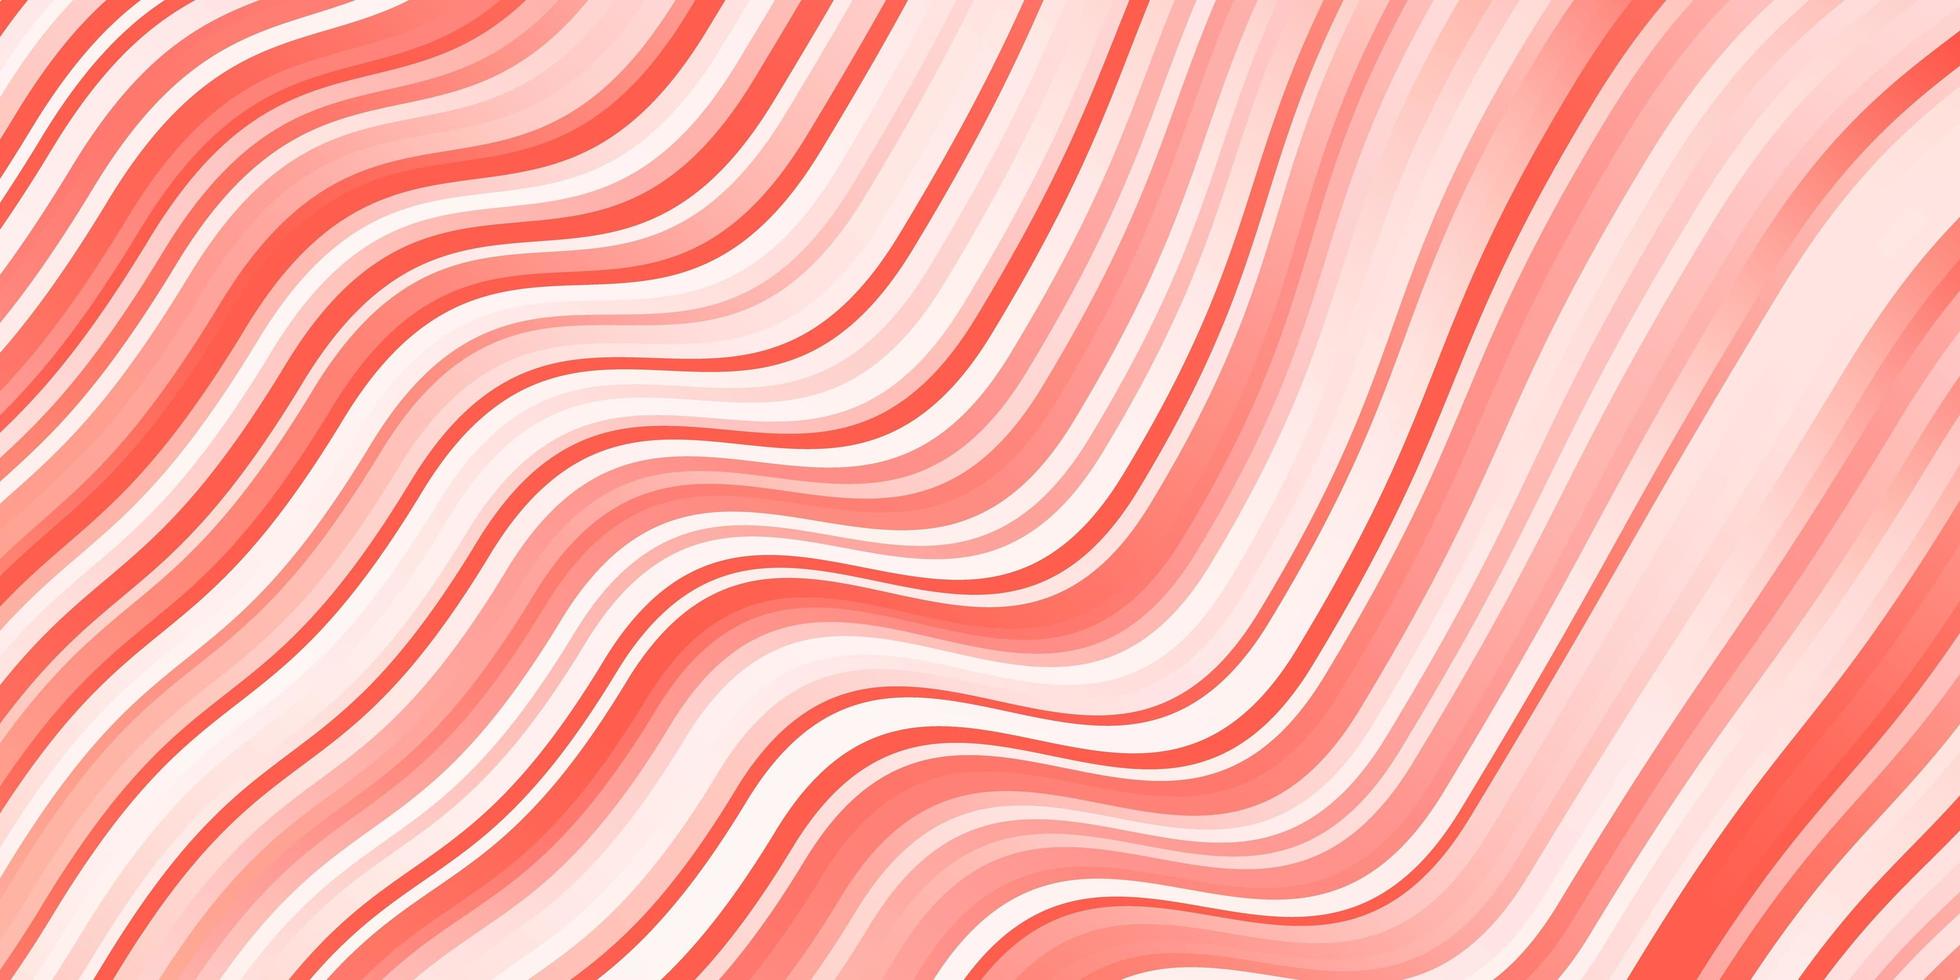 patrón de vector rojo claro con líneas torcidas.